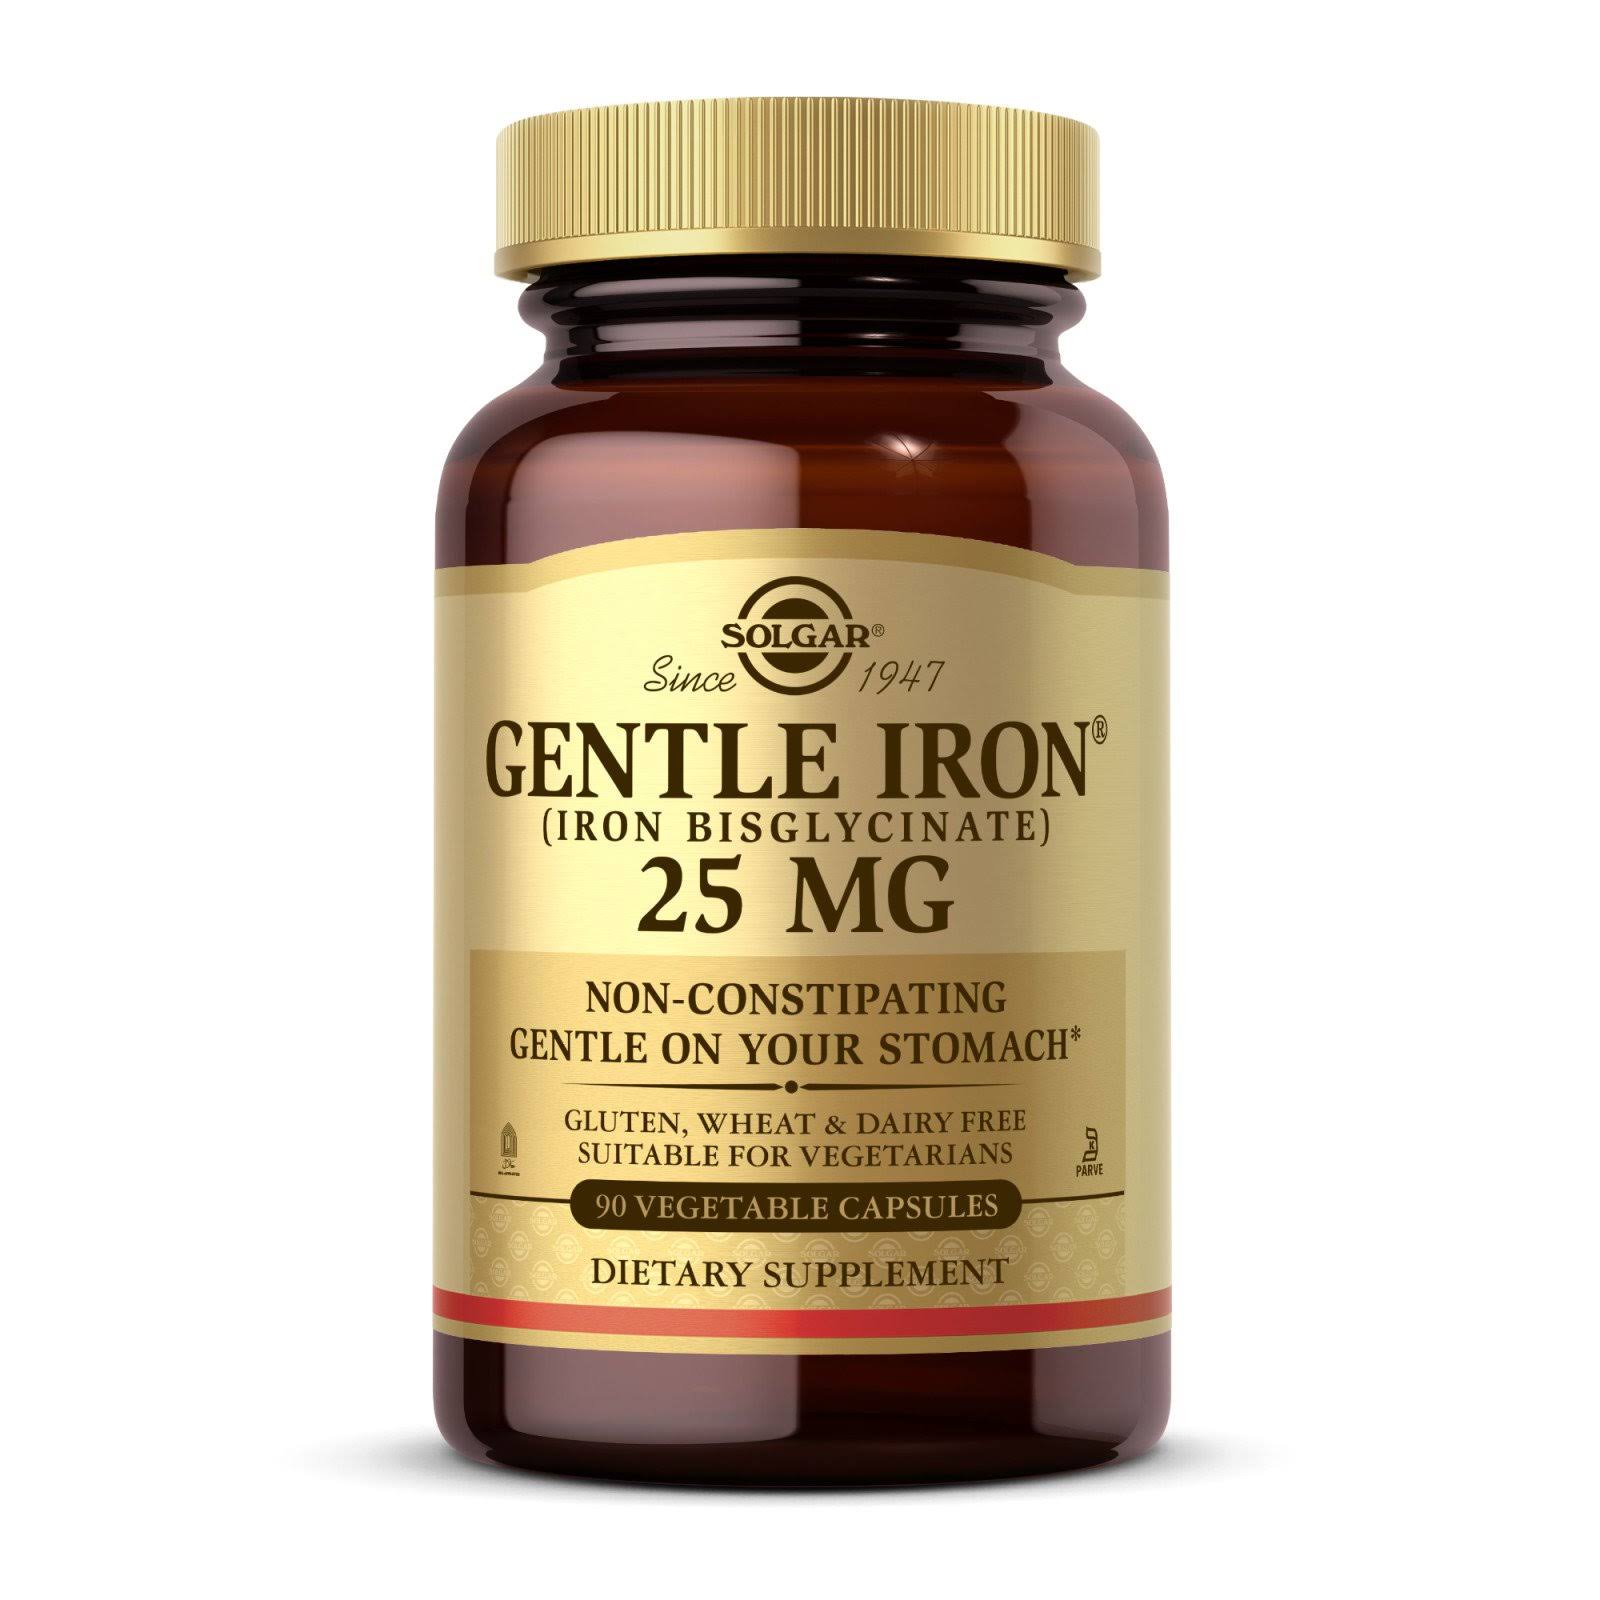 Solgar Gentle Iron Dietary Supplement